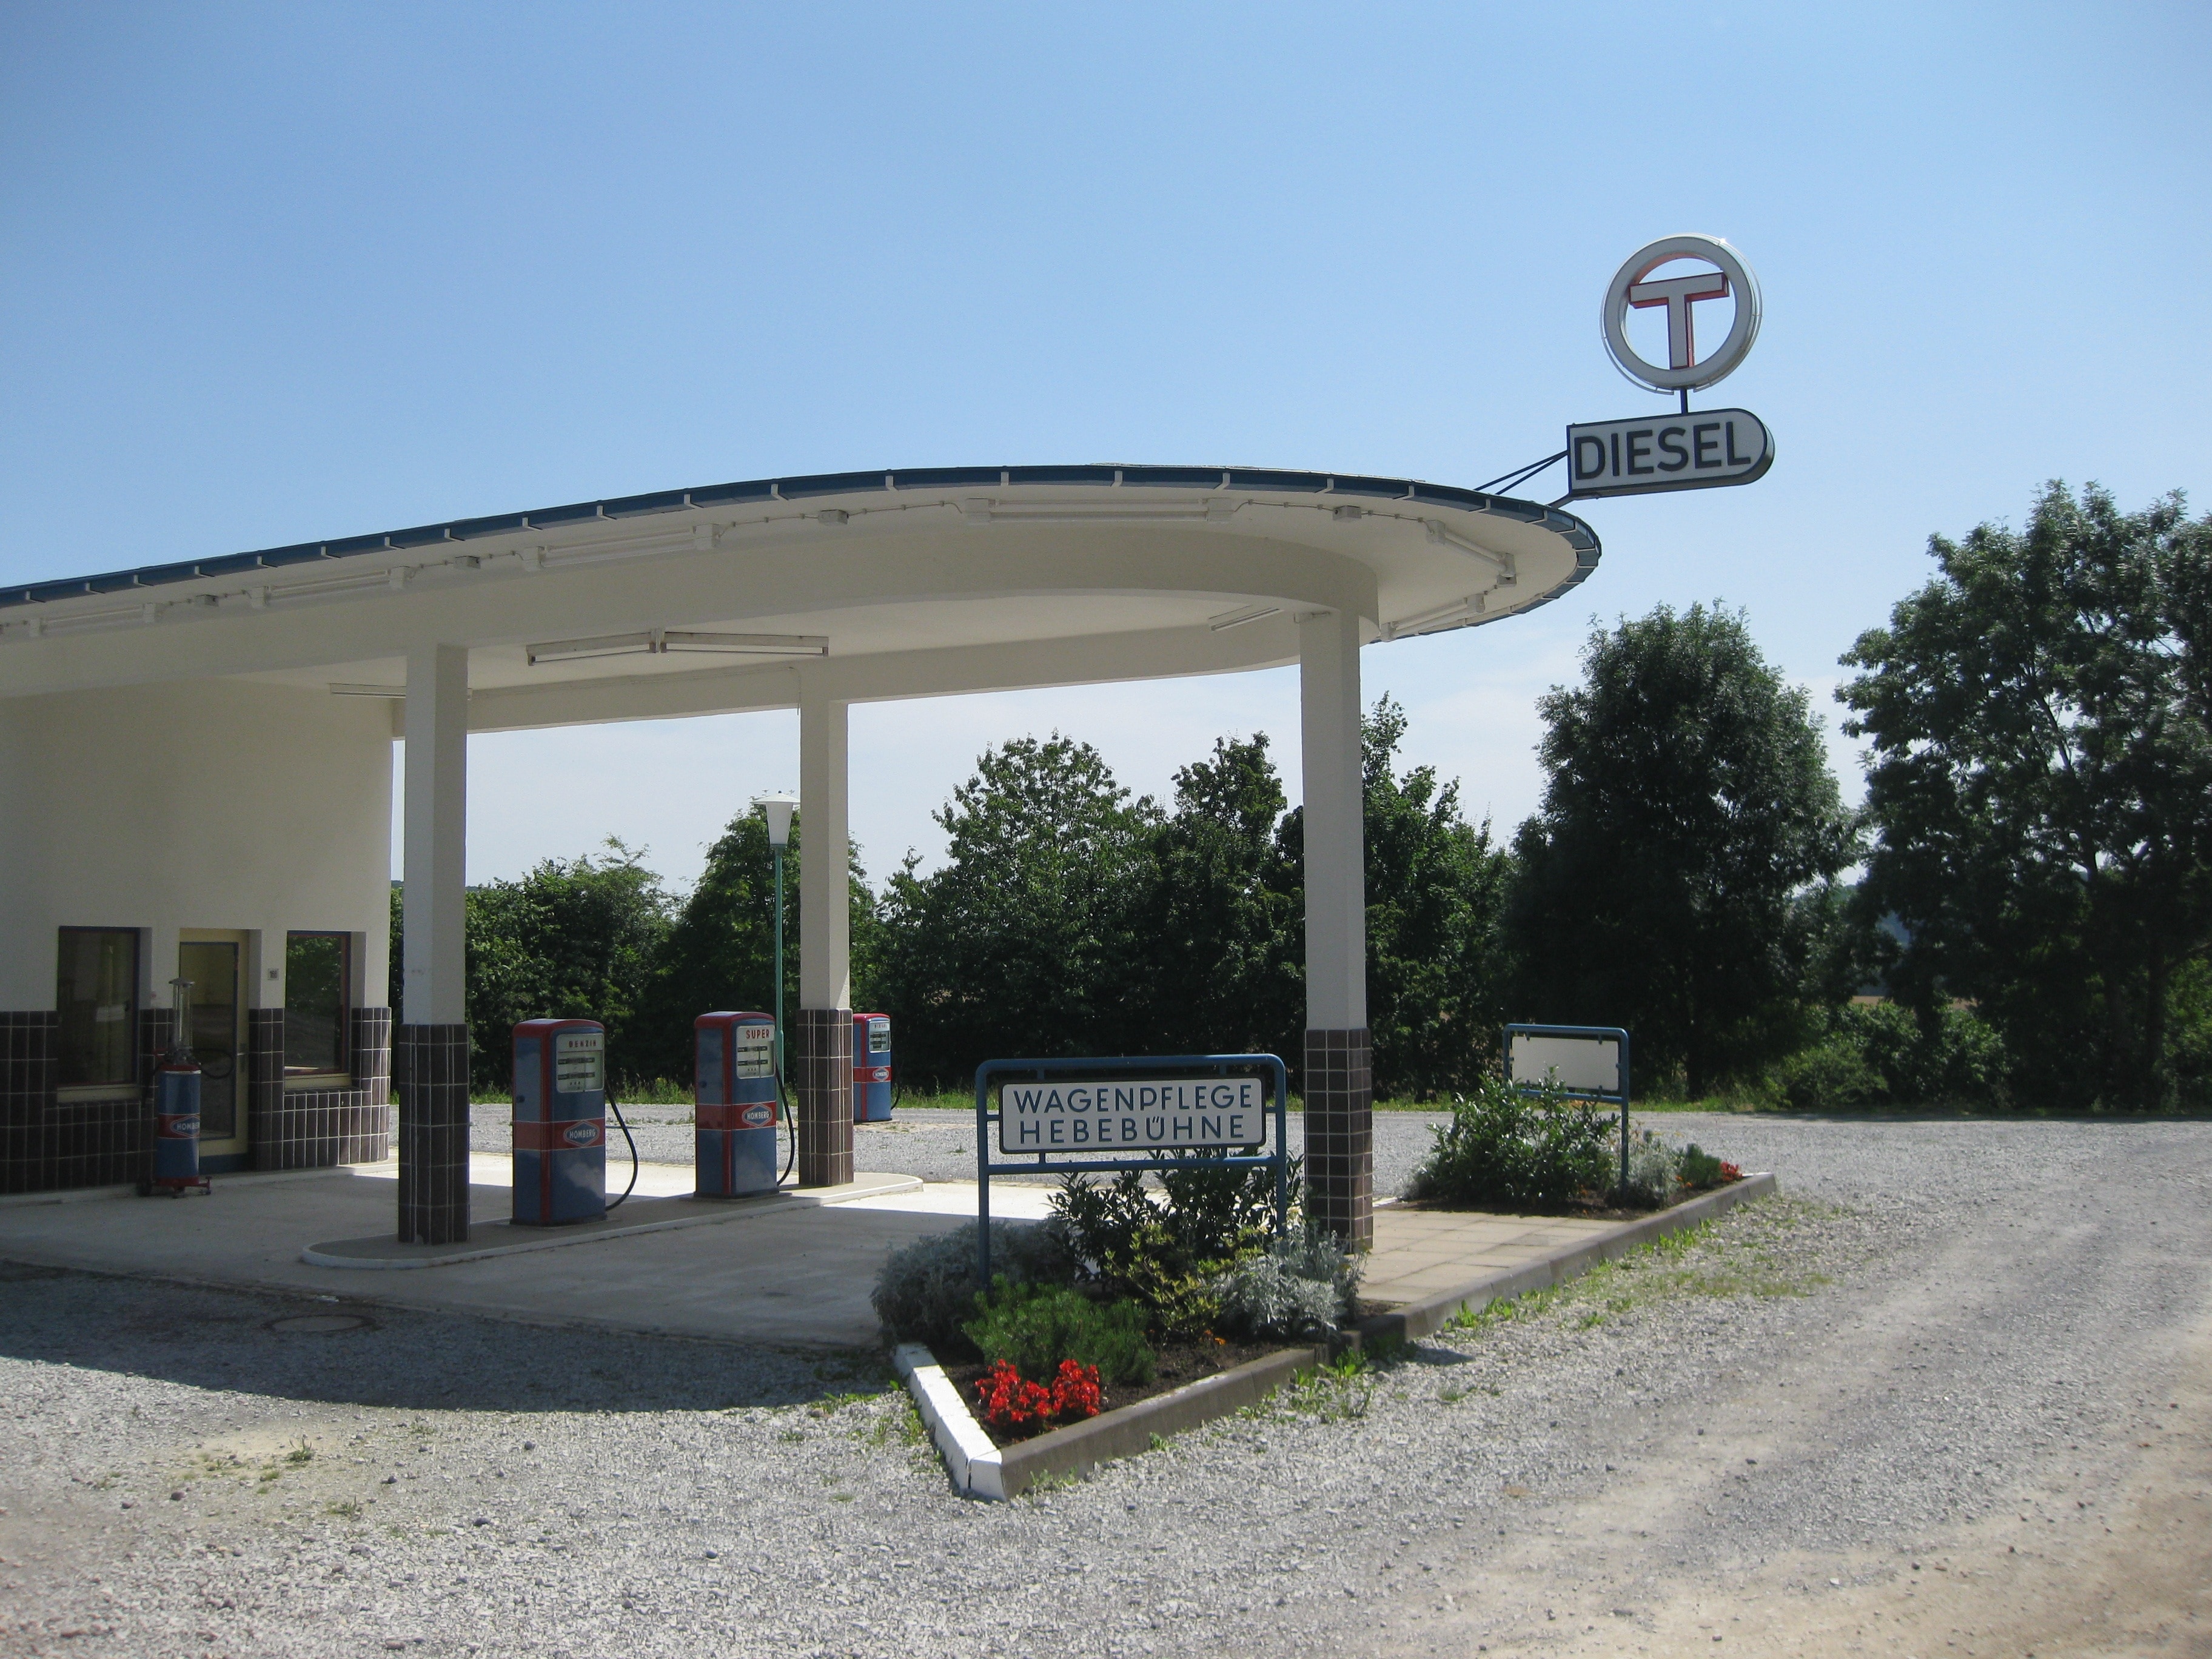 Diesel gasoline station